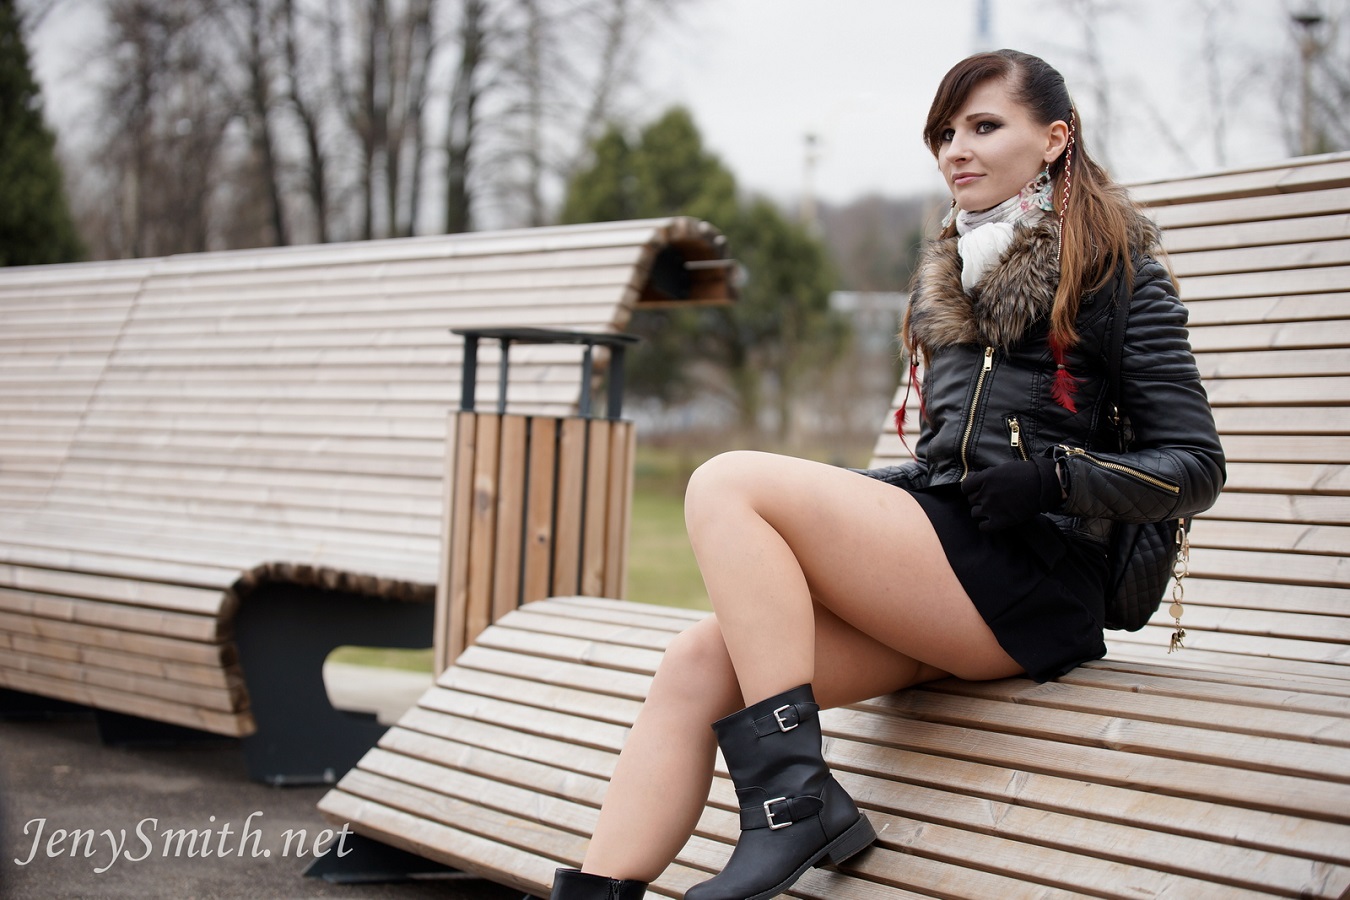 Model Brunette Public Jacket Women Black Jackets Fur Zipper On Bench Black Boots Outdoors 1350x900